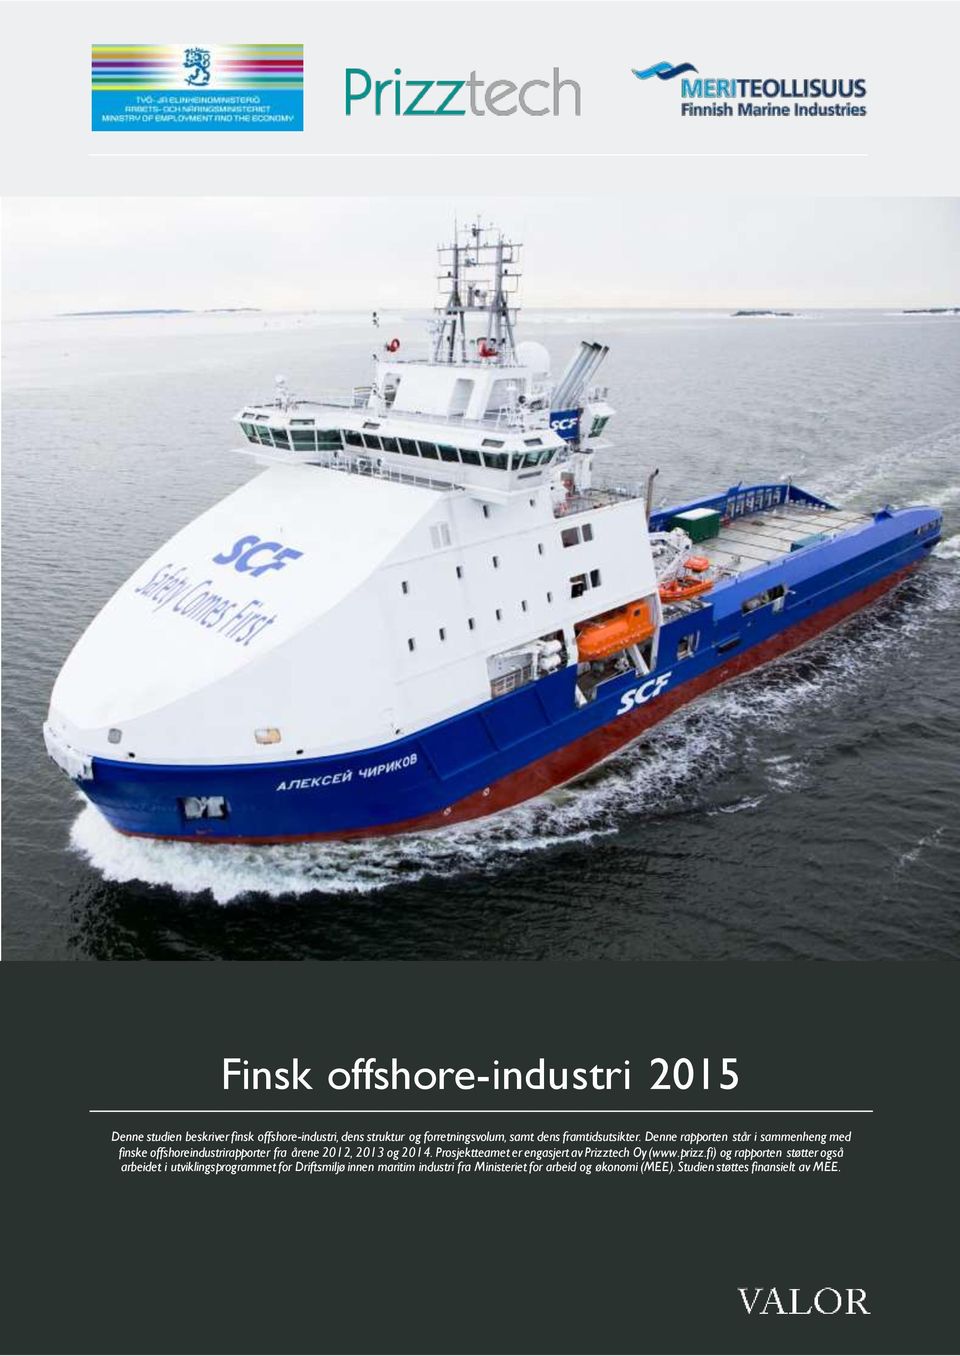 Denne rapporten står i sammenheng med finske offshoreindustrirapporter fra årene 2012, 2013 og 2014.